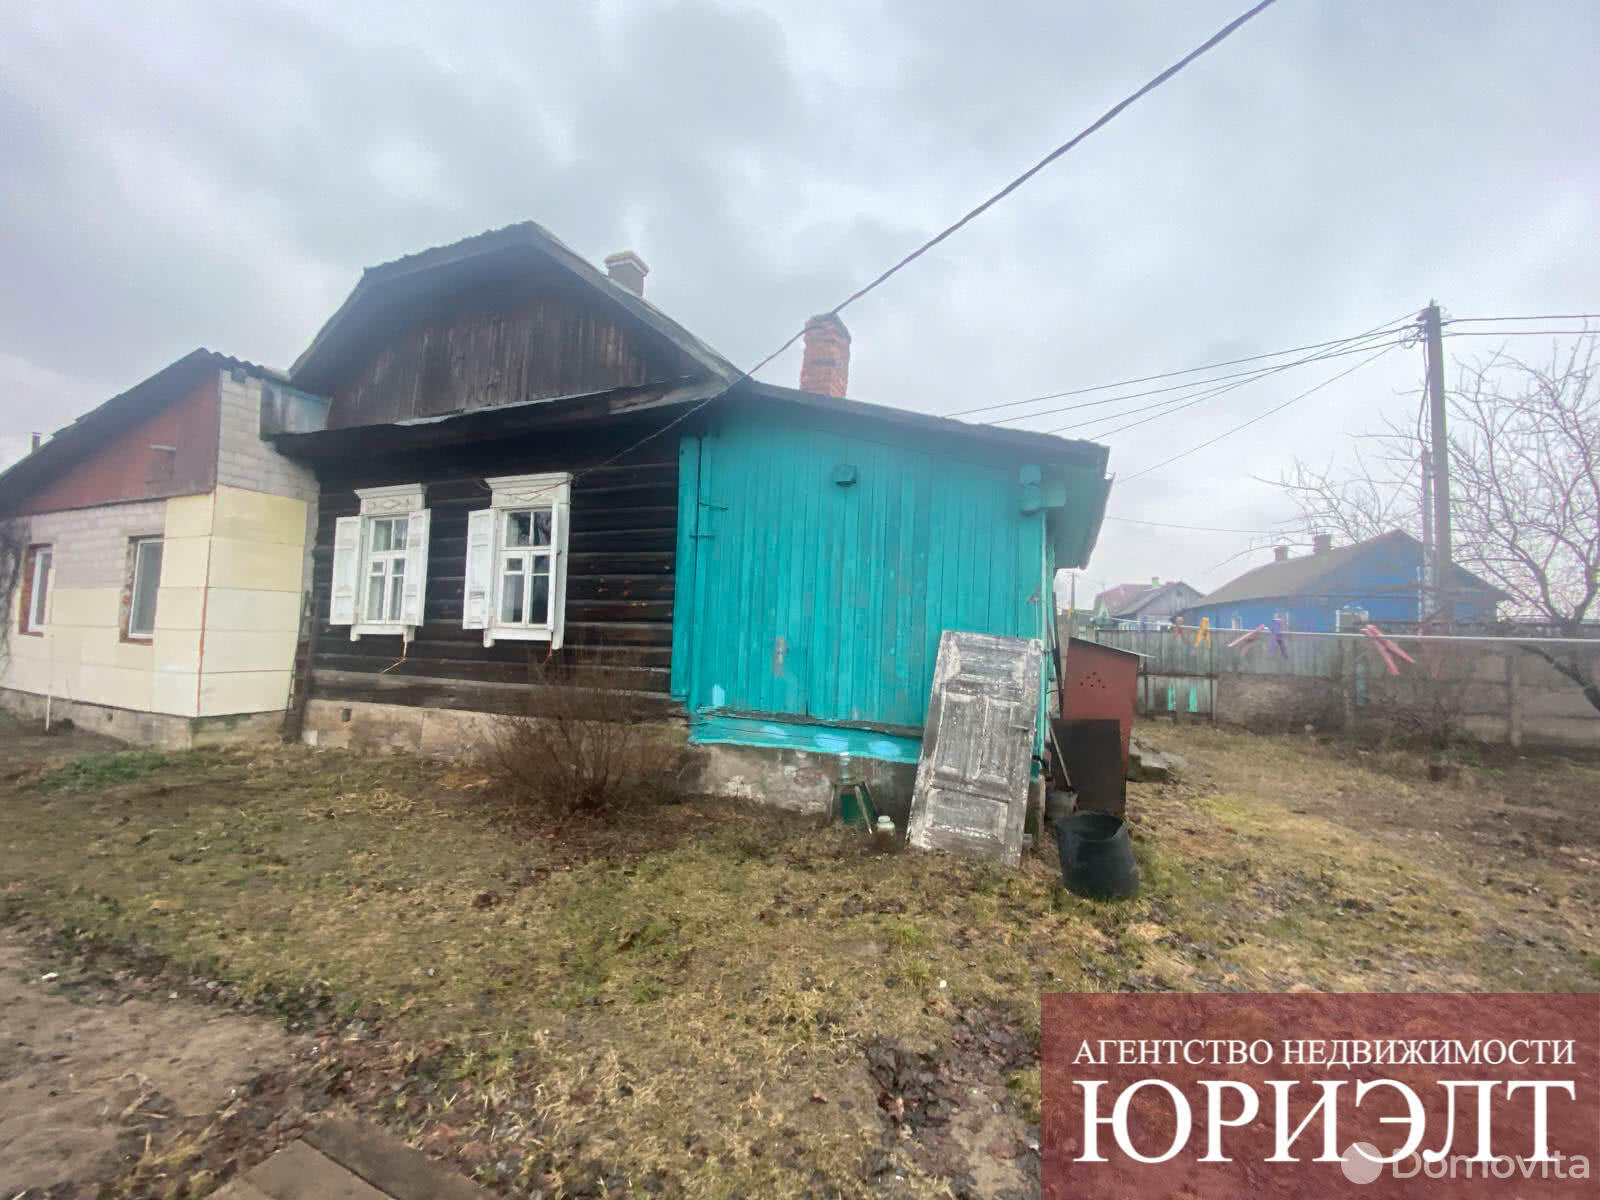 Продать 1-этажный дом в Бобруйске, Могилевская область ул. Комбинатская, 10000USD, код 637128 - фото 1